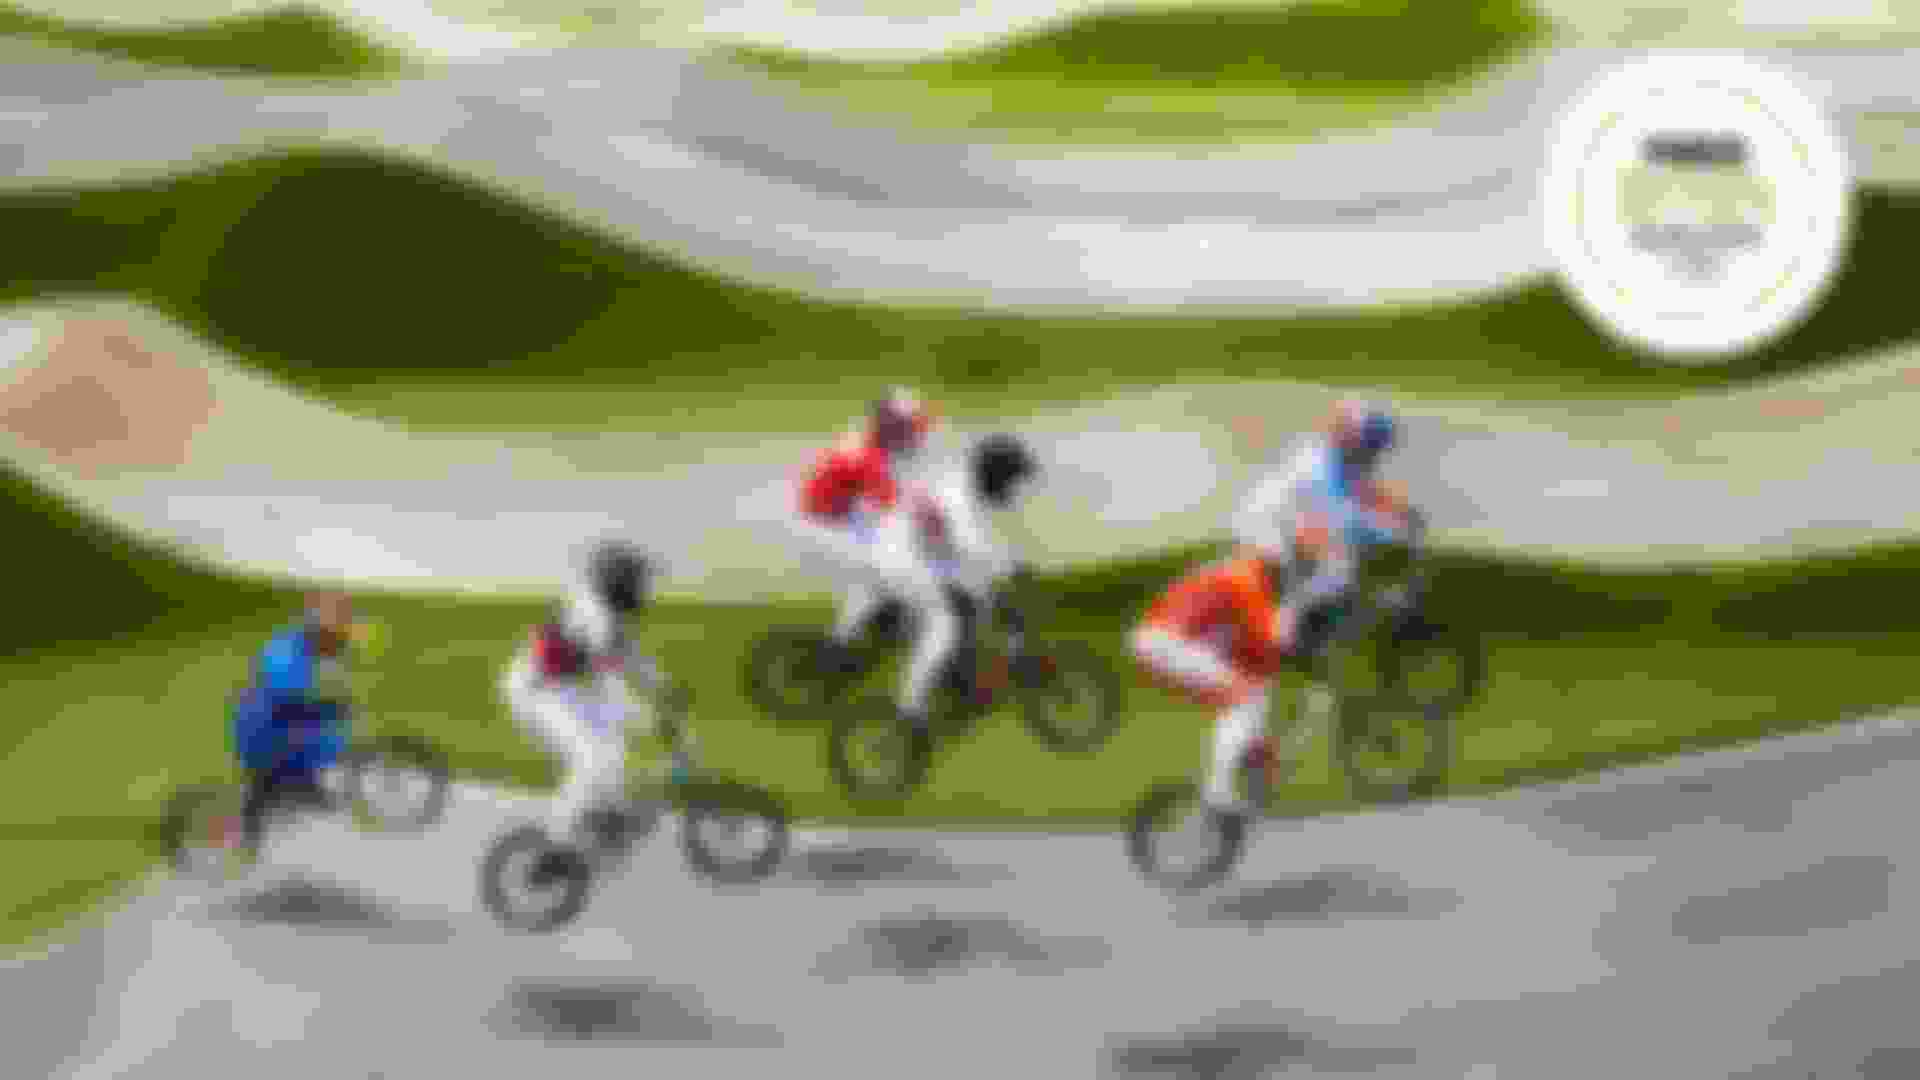 سباق دراجات (بي ام إكس) | تصفية أولمبية | كأس العالم الجولتان 5 و6 | بوغوتا